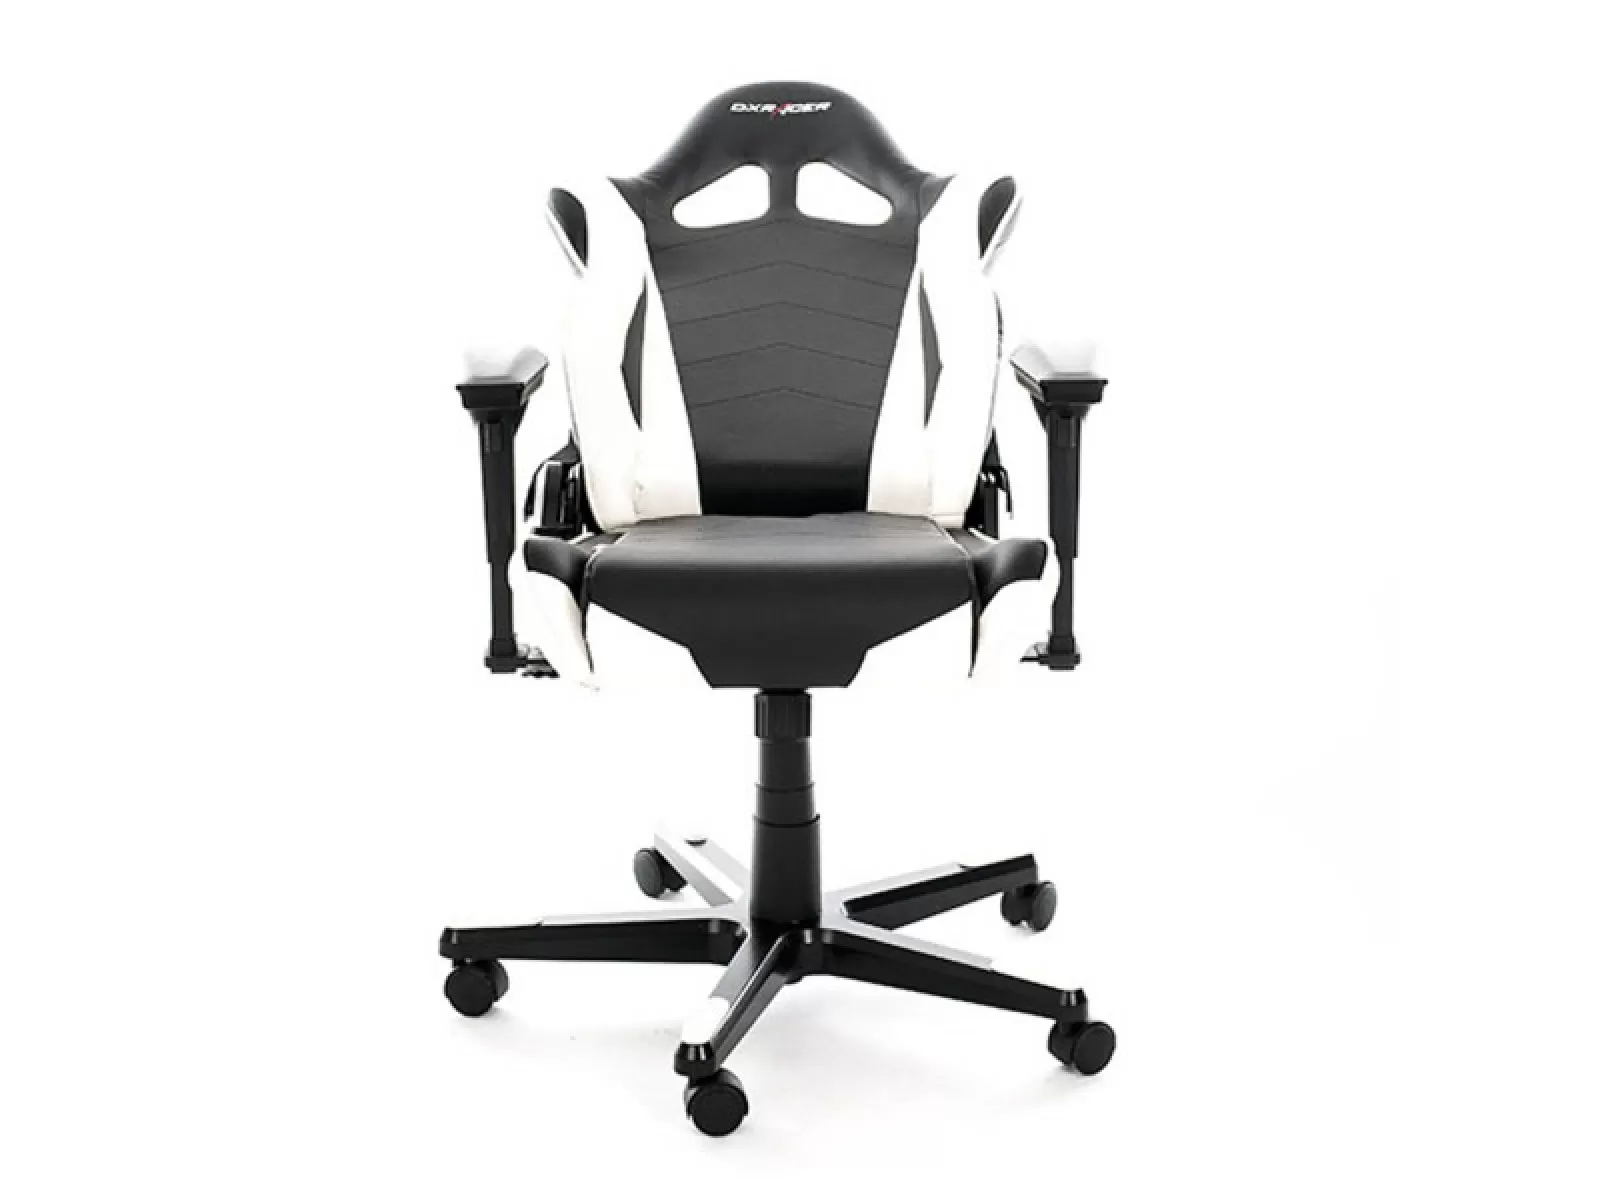 Игровое кресло DXRacer серии Racing 